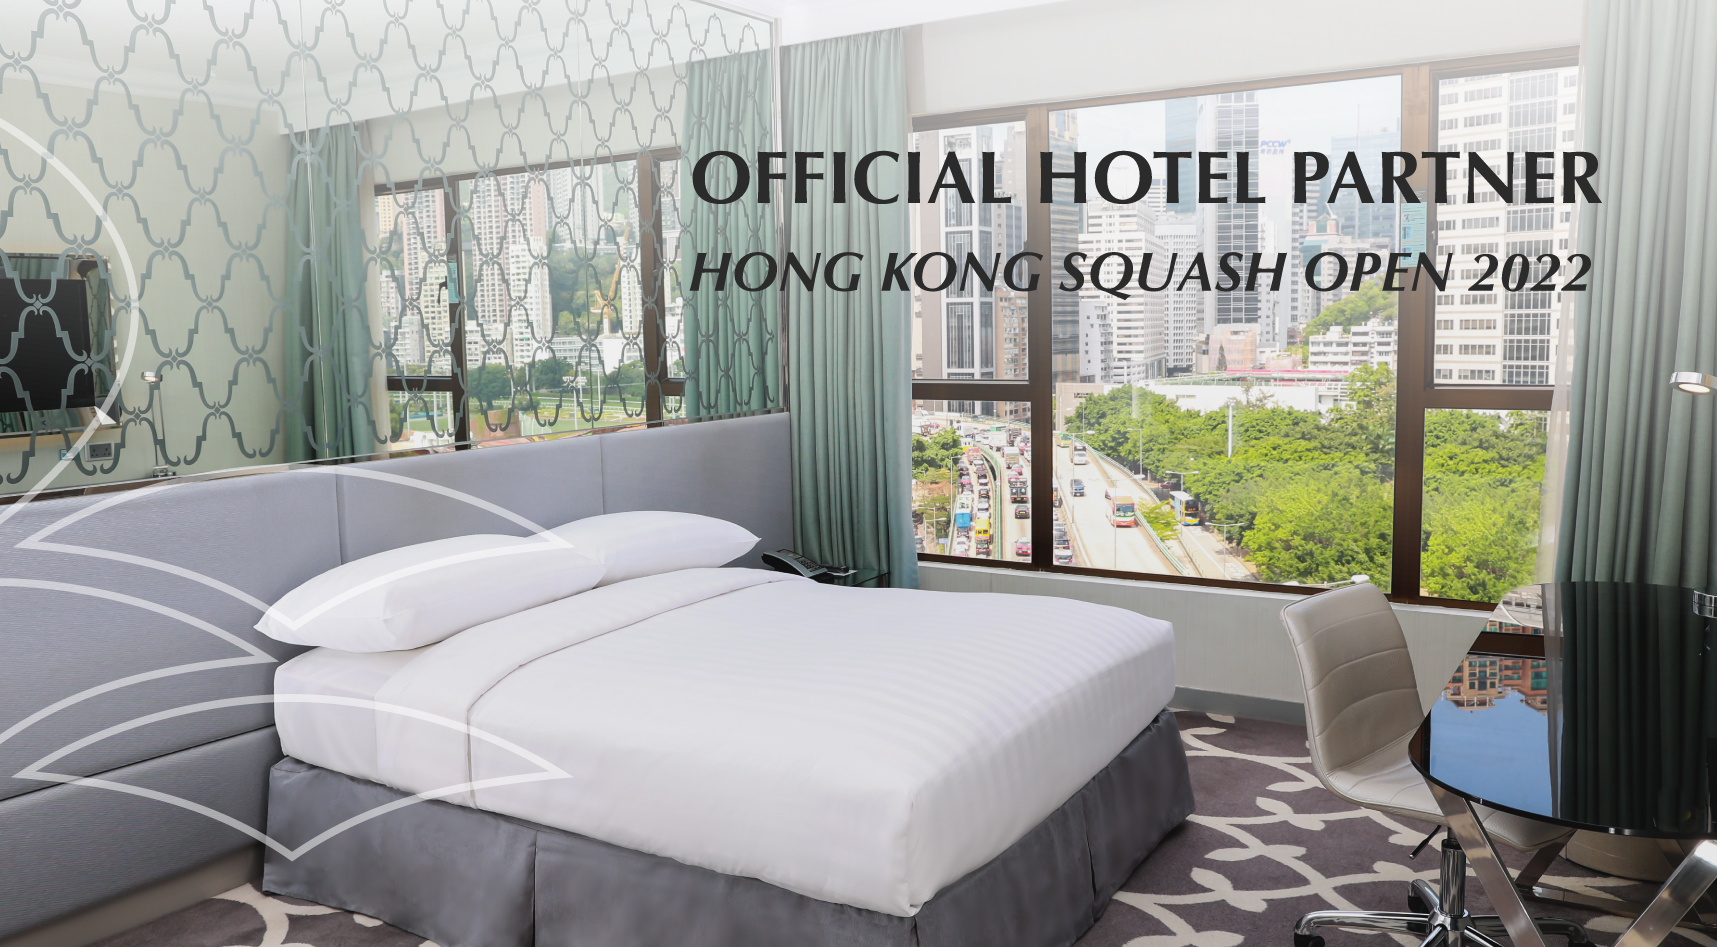 Dorsett Wanchai as the Official Hotel Partner for Hong Kong Squash Open 2022